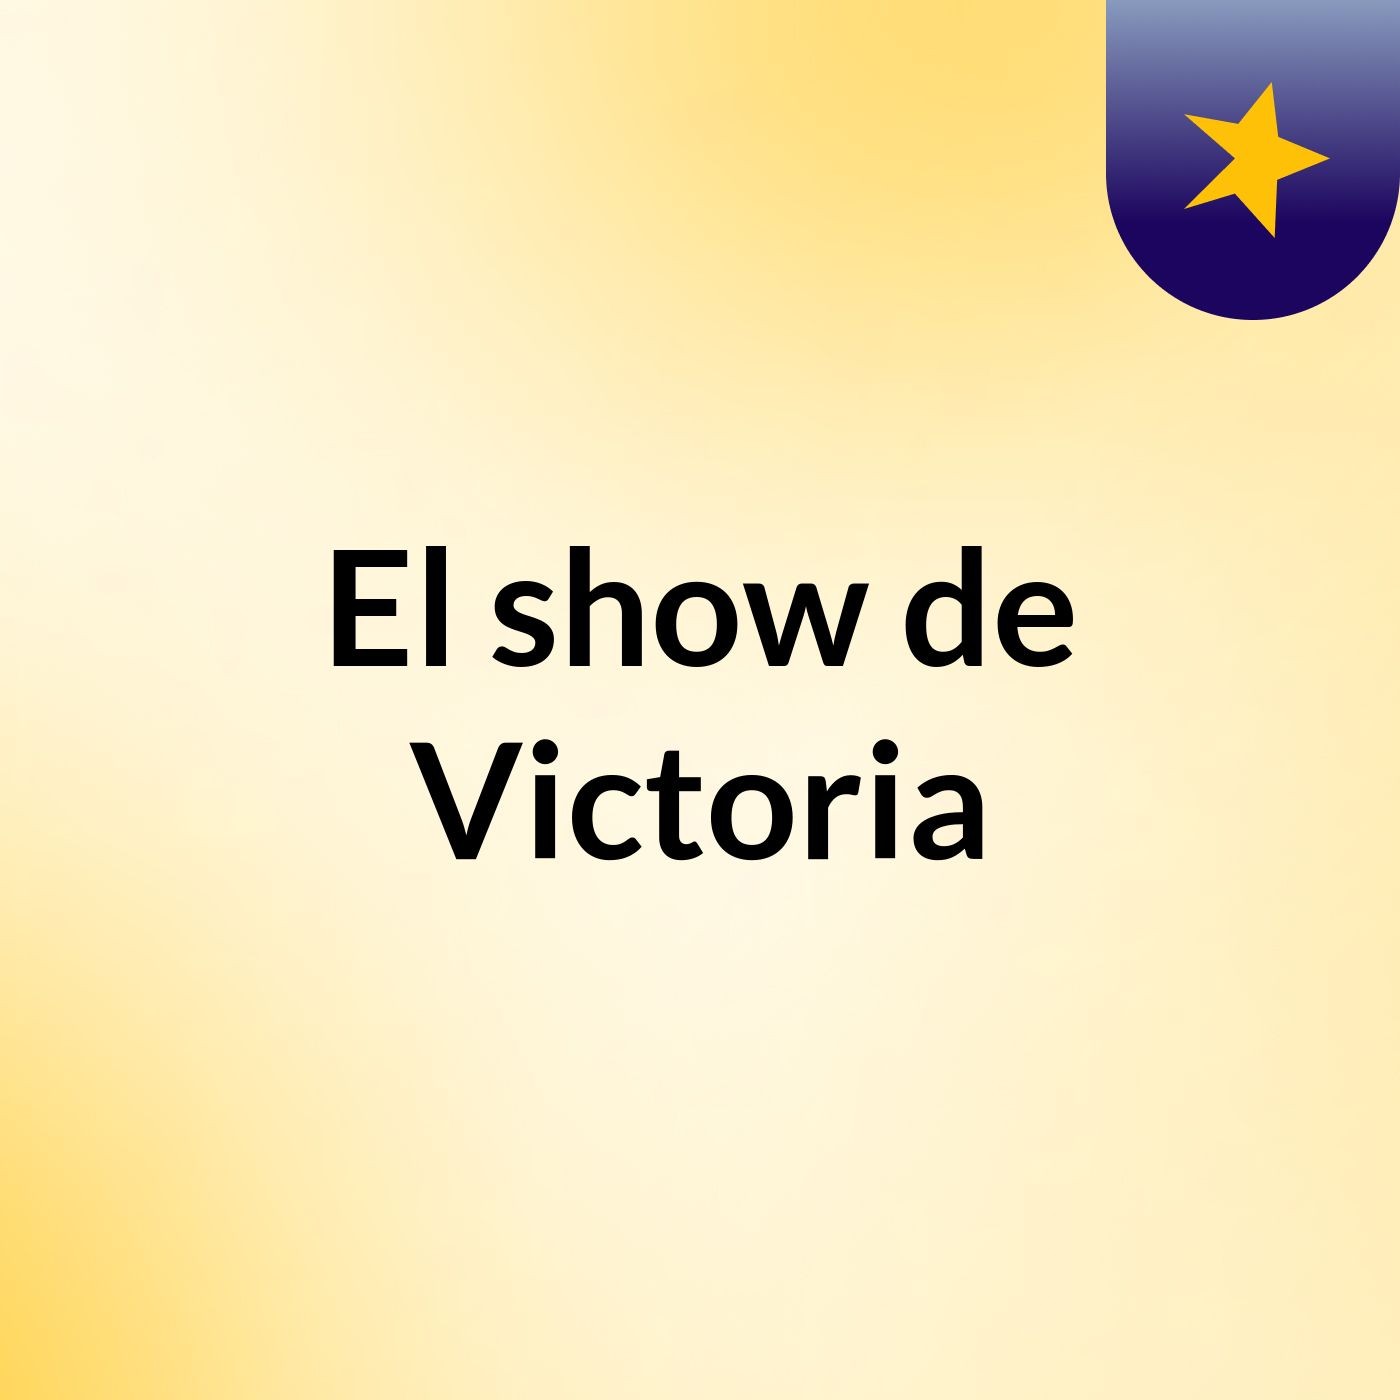 El show de Victoria